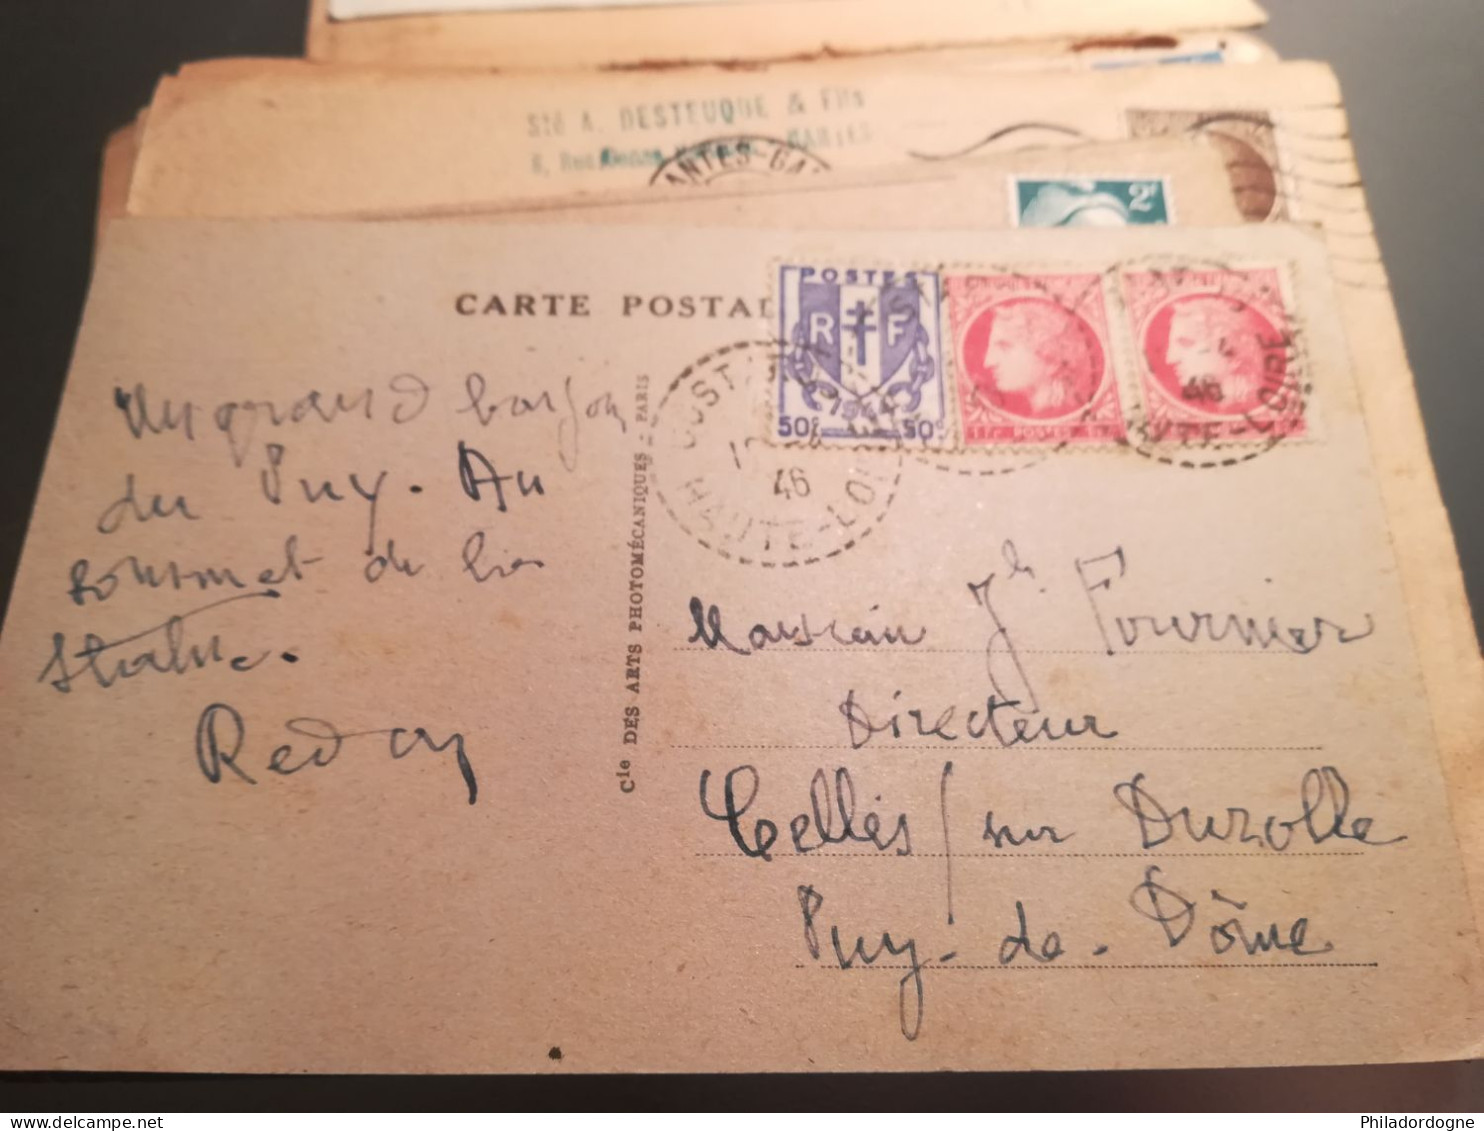 France - Lot de + de 60 documents au type Céres de Mazelin - années 40/60 - lot à trier